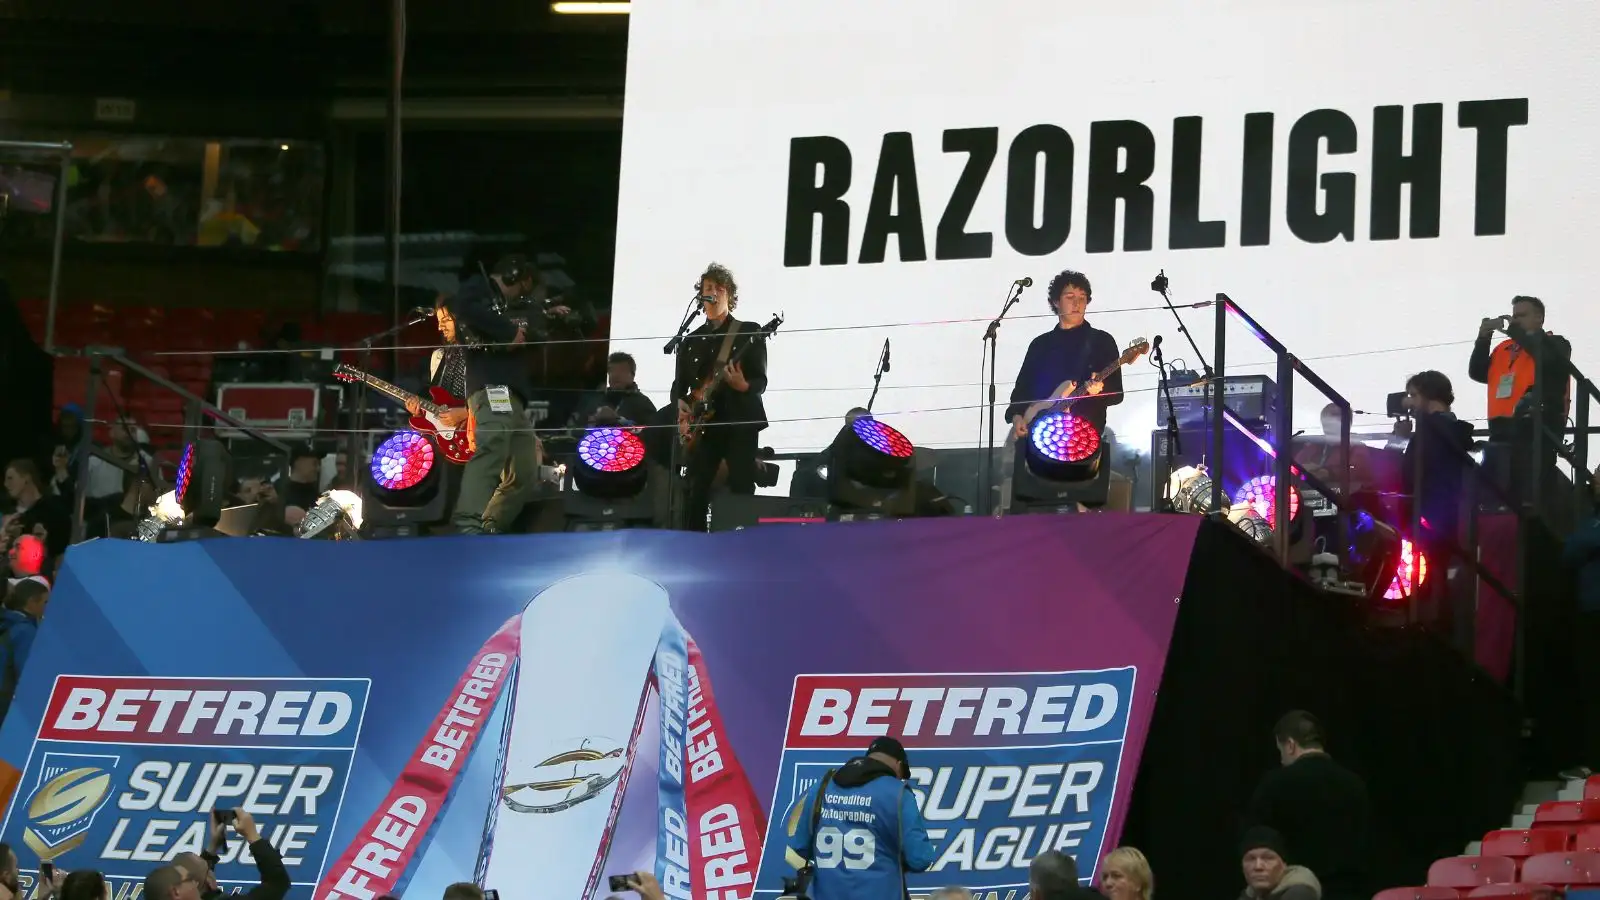 Razorlight performing at Old Trafford